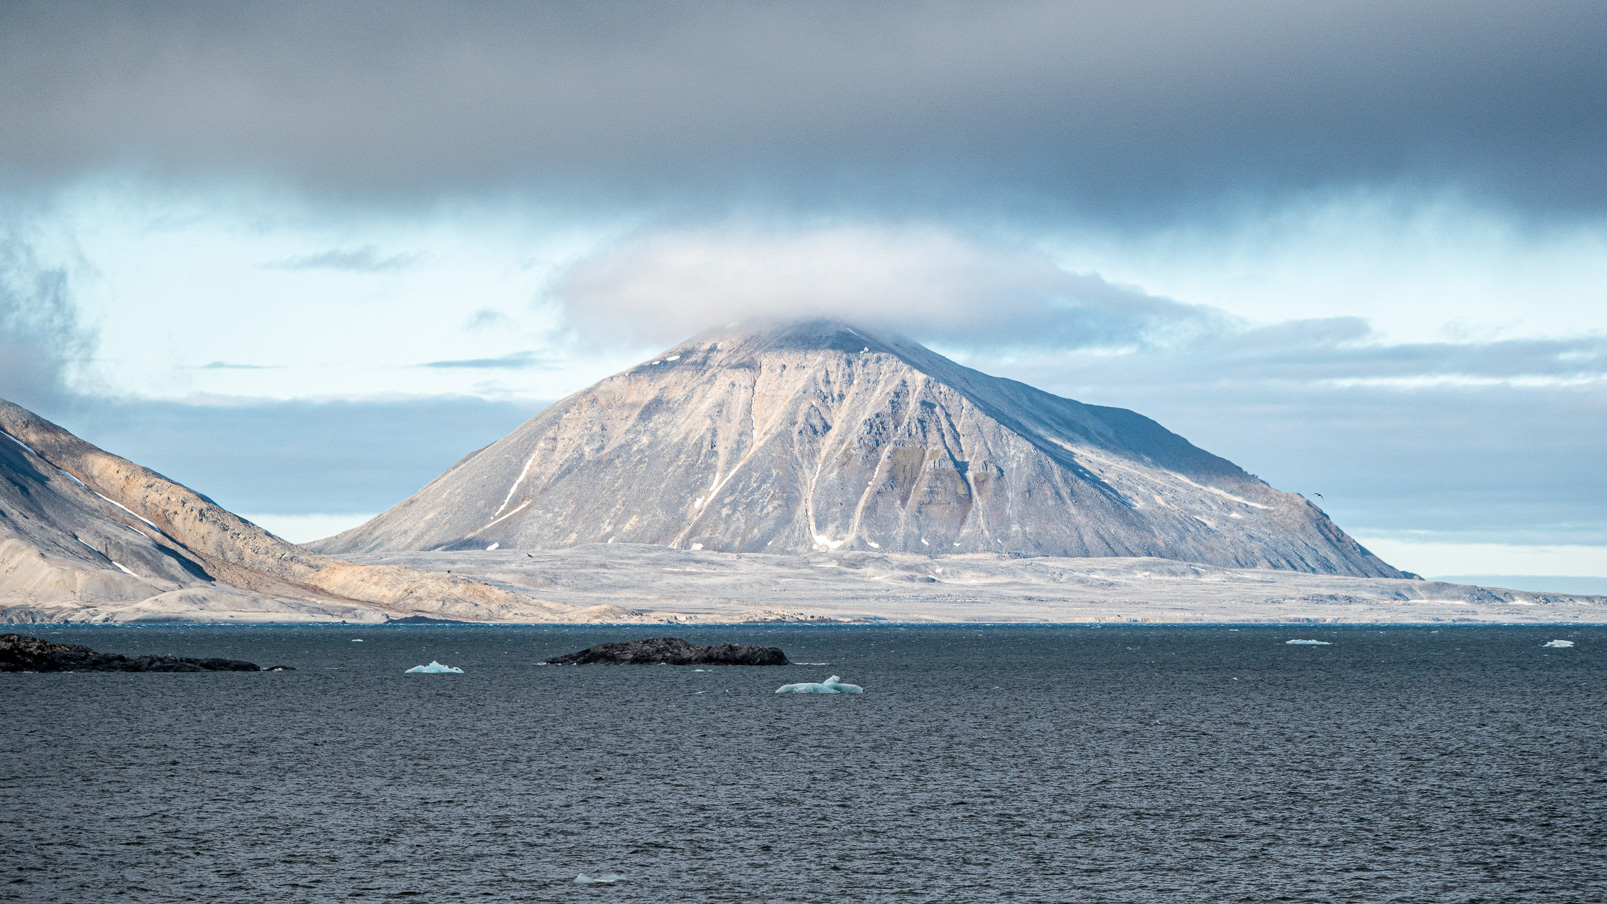 Le relief montagneux du Svalbard apparait sous la lumière du soleil permanent en ce début juillet.